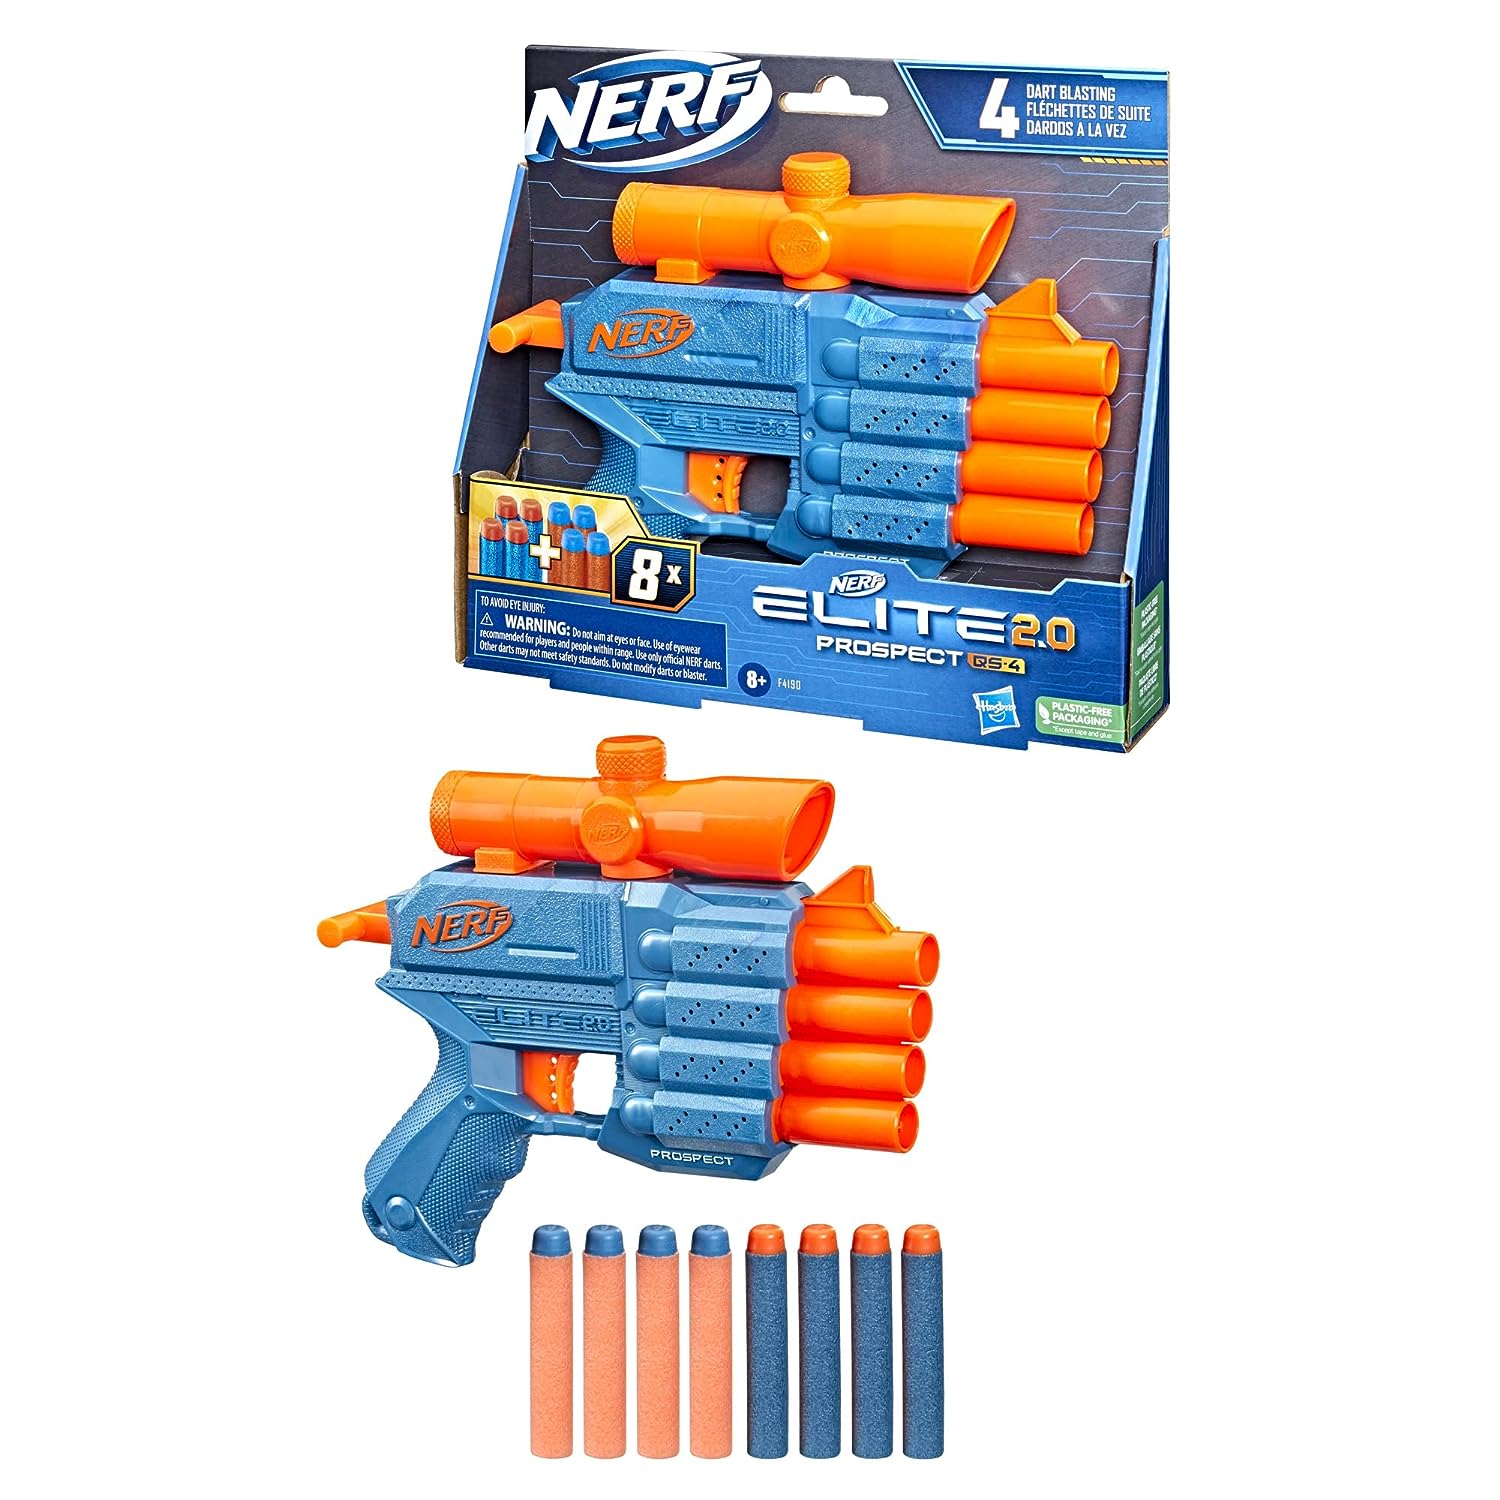 Nerf Elite 2.0 Prospect QS-4 Blaster - Blue and Orange